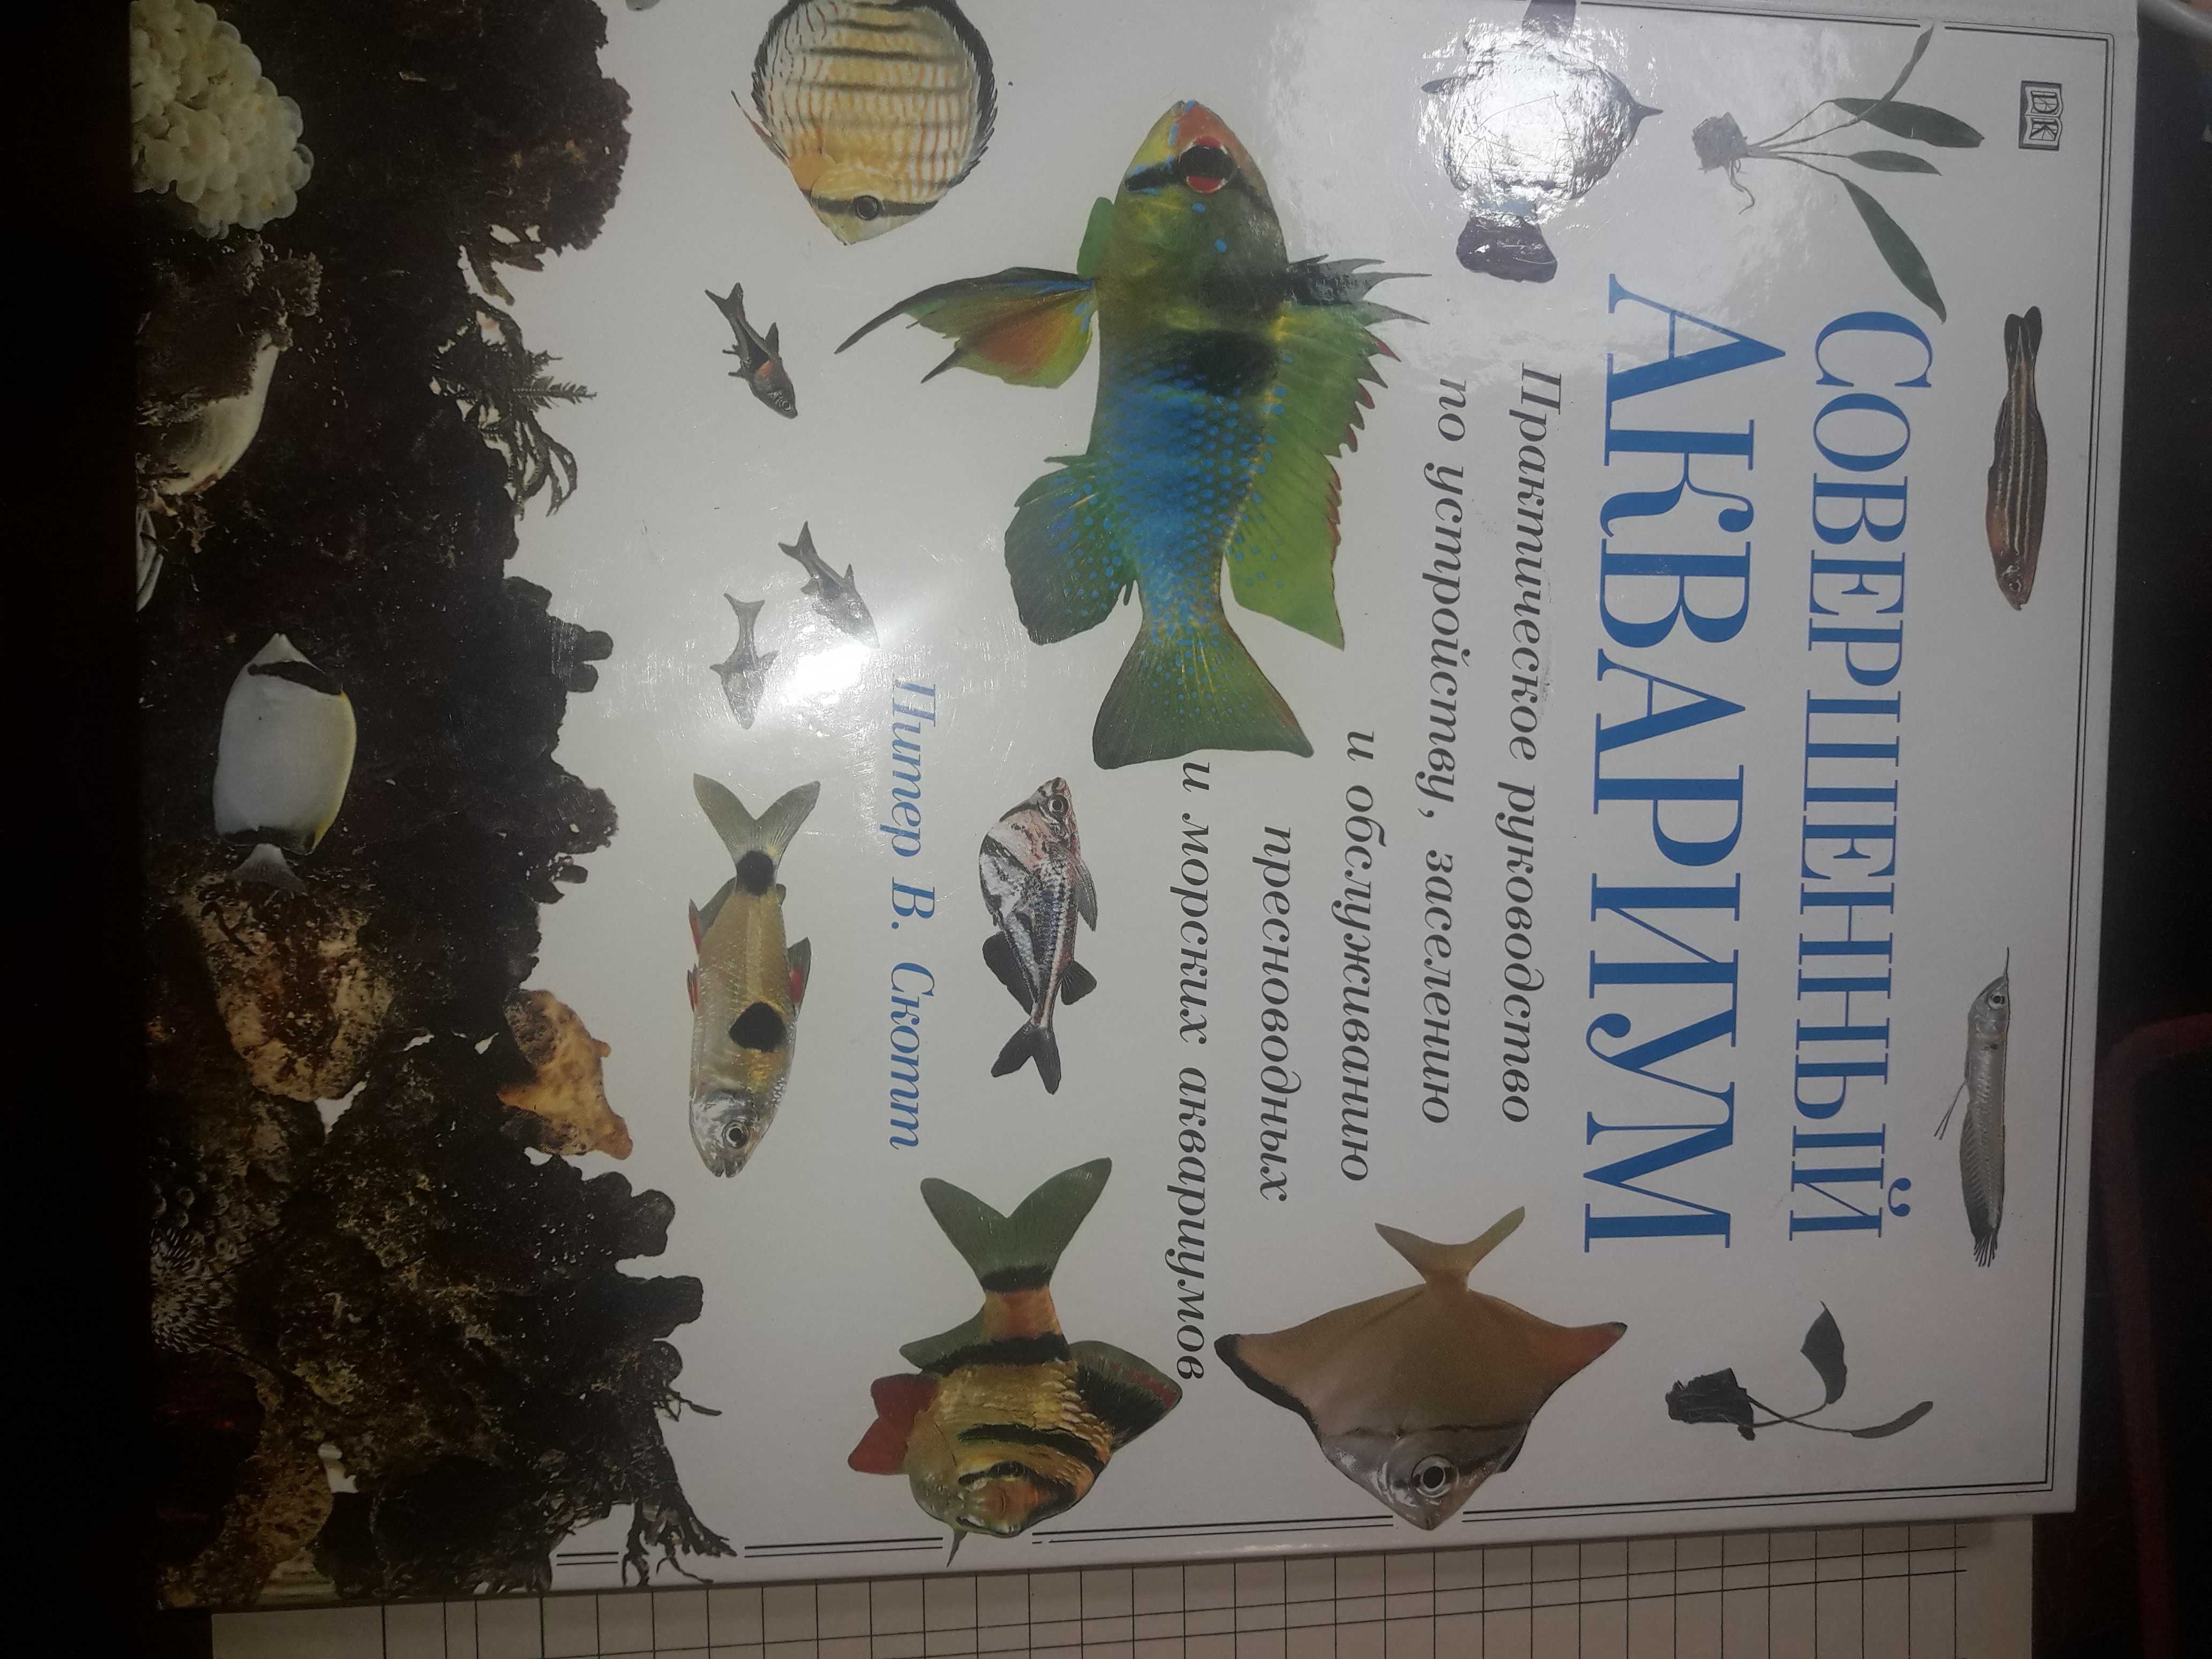 Шешко Энциклопедия ландшафтного дизайна 2007 тир 5000.